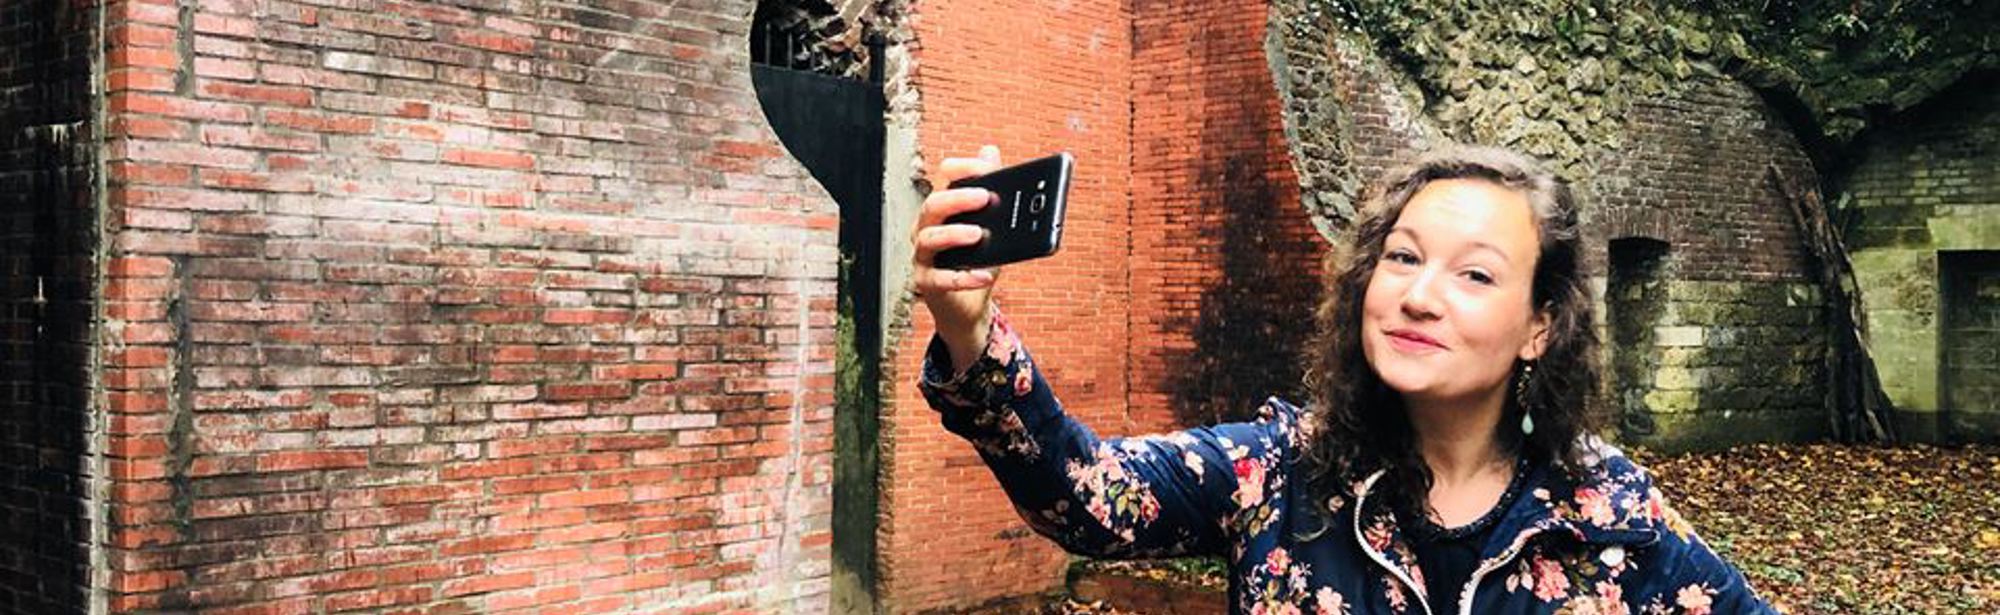 Vlogster Jenneke maakt een selfie voor de Romeinse Katakomben Valkenburg